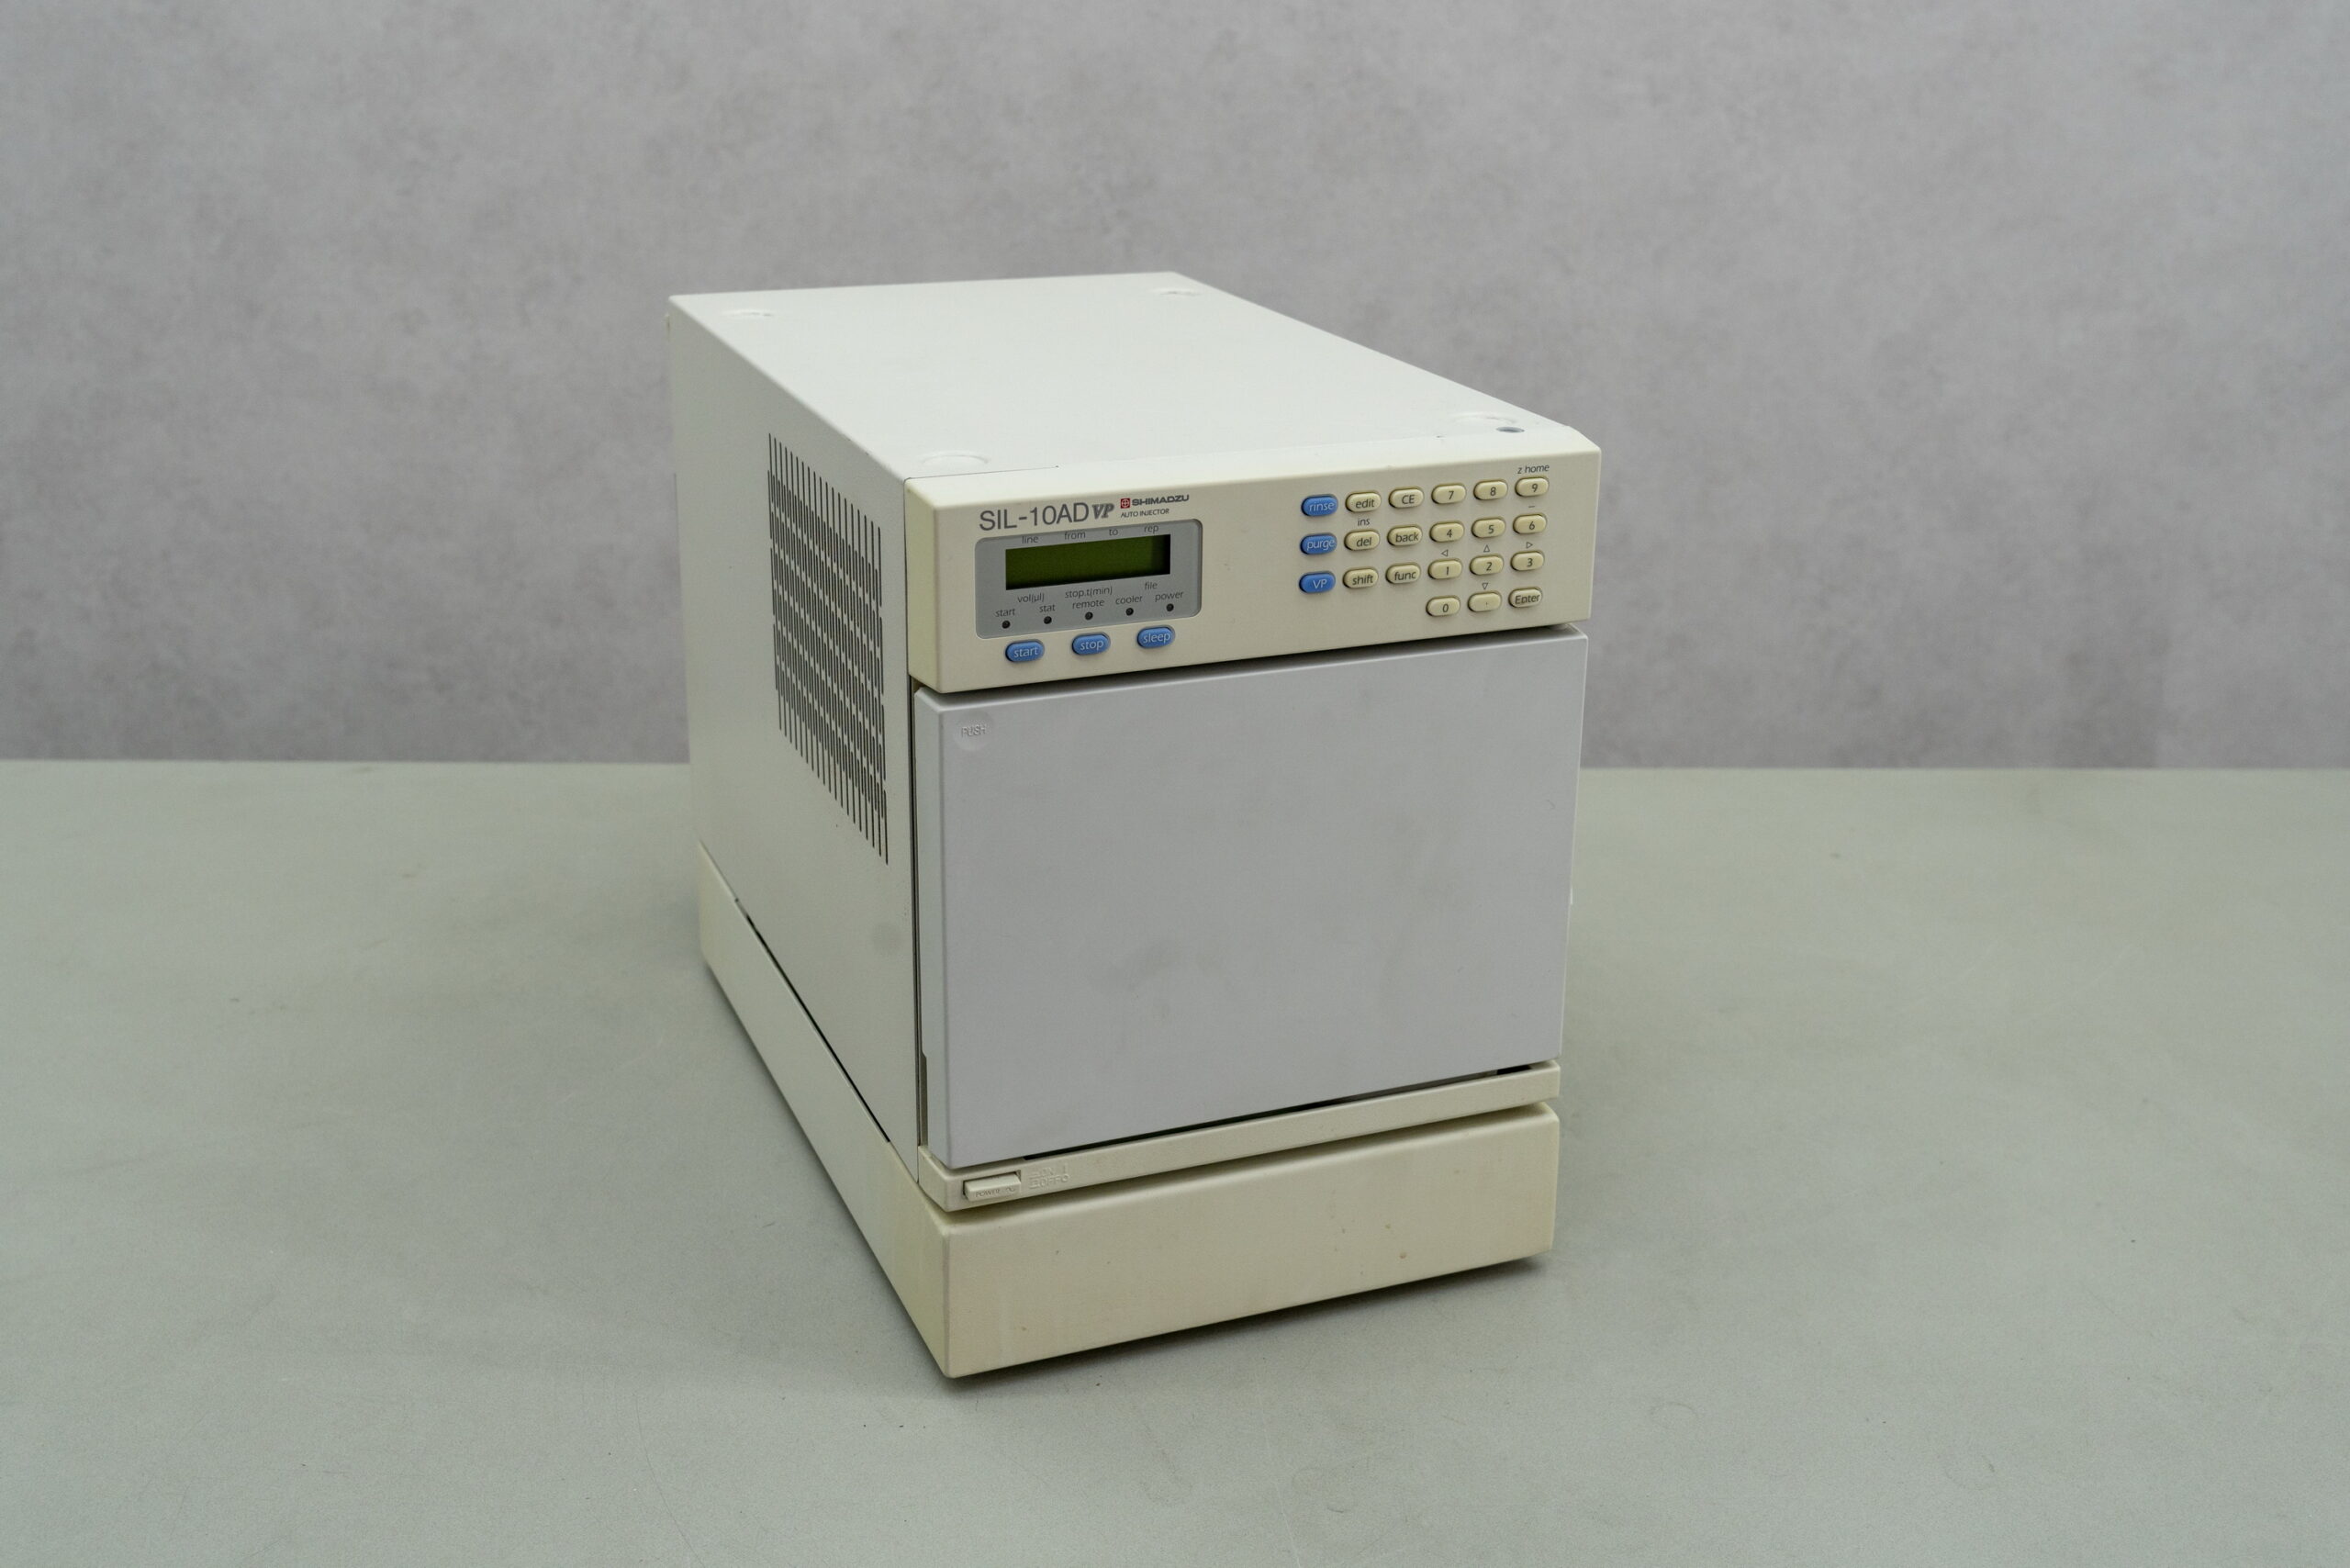 ピペットチップ(ART) 20μL 未滅菌 Thermo Scientific ART aso 2-9800-11 医療・研究用機器 通販 